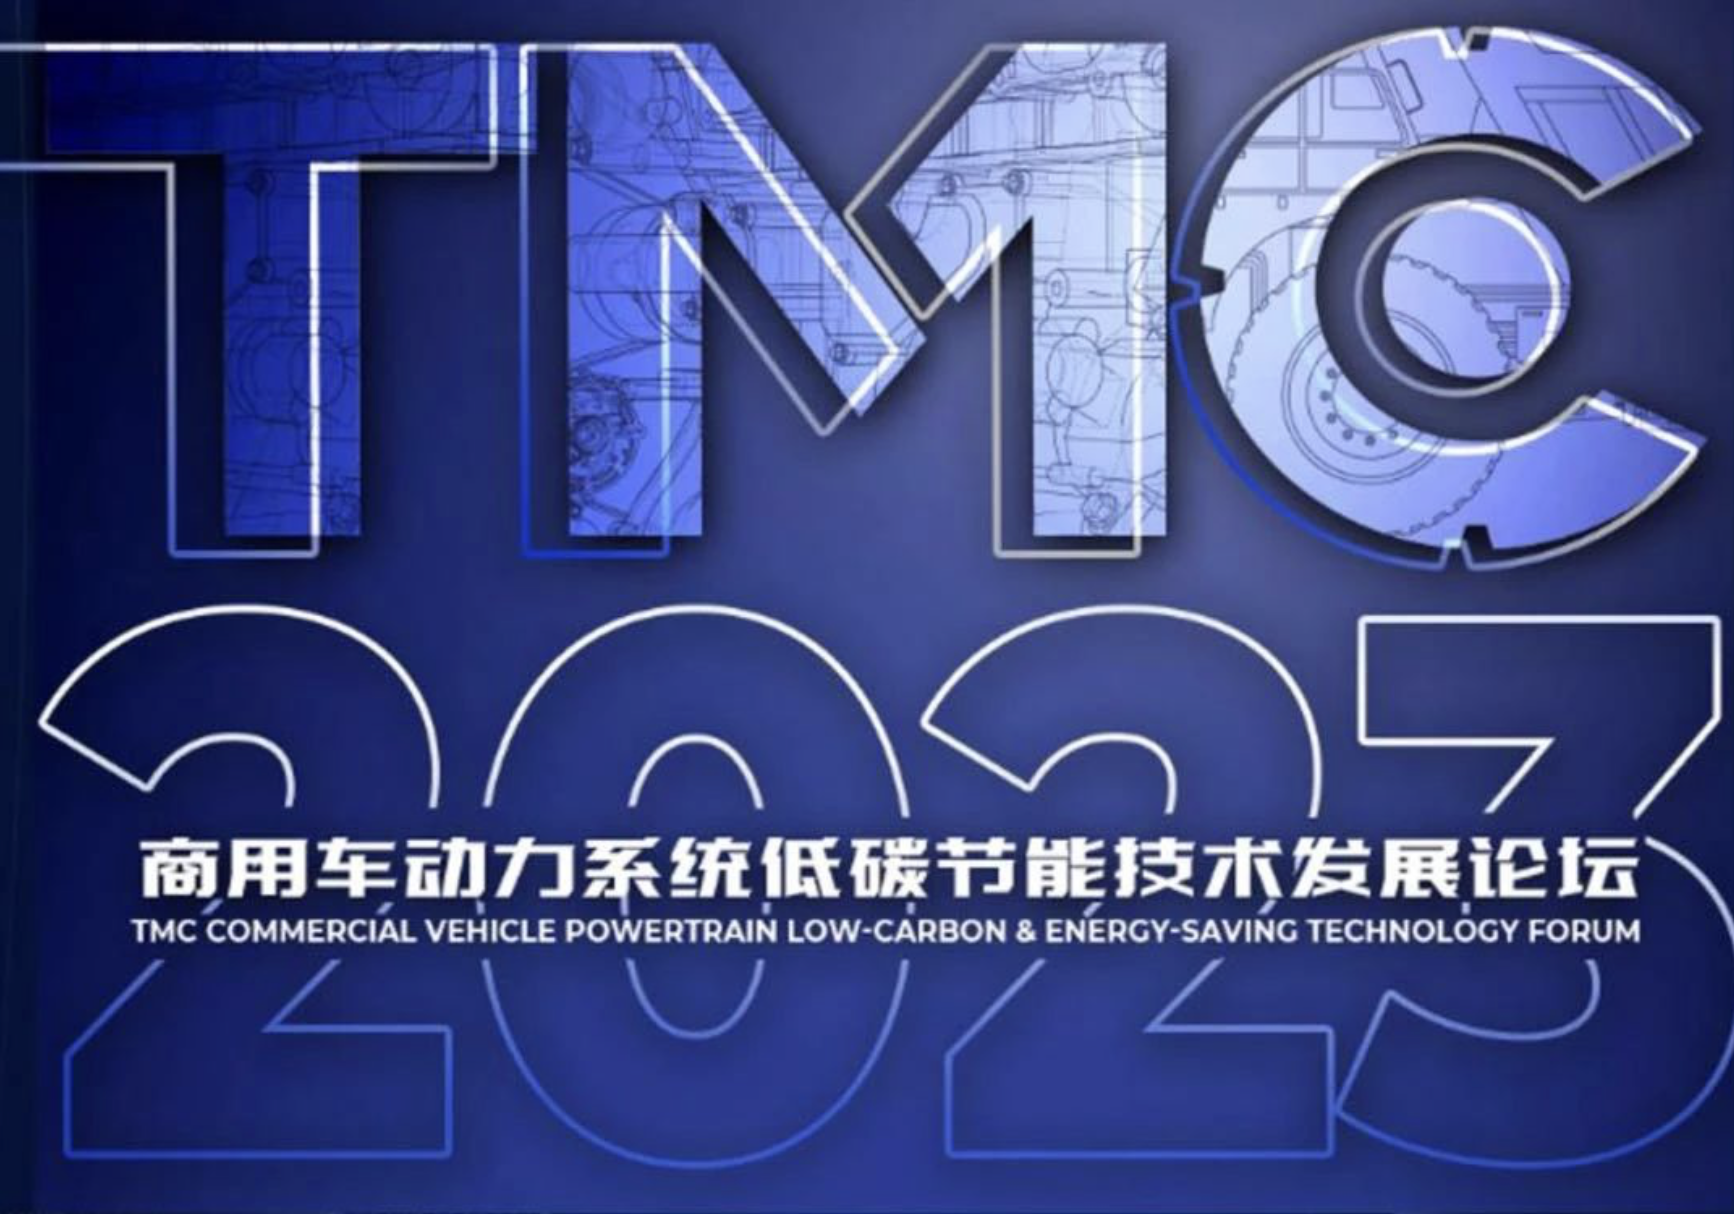 第二屆商用車動力系統低碳節能技術發展論壇（TMC2023）將于7月在青島召開